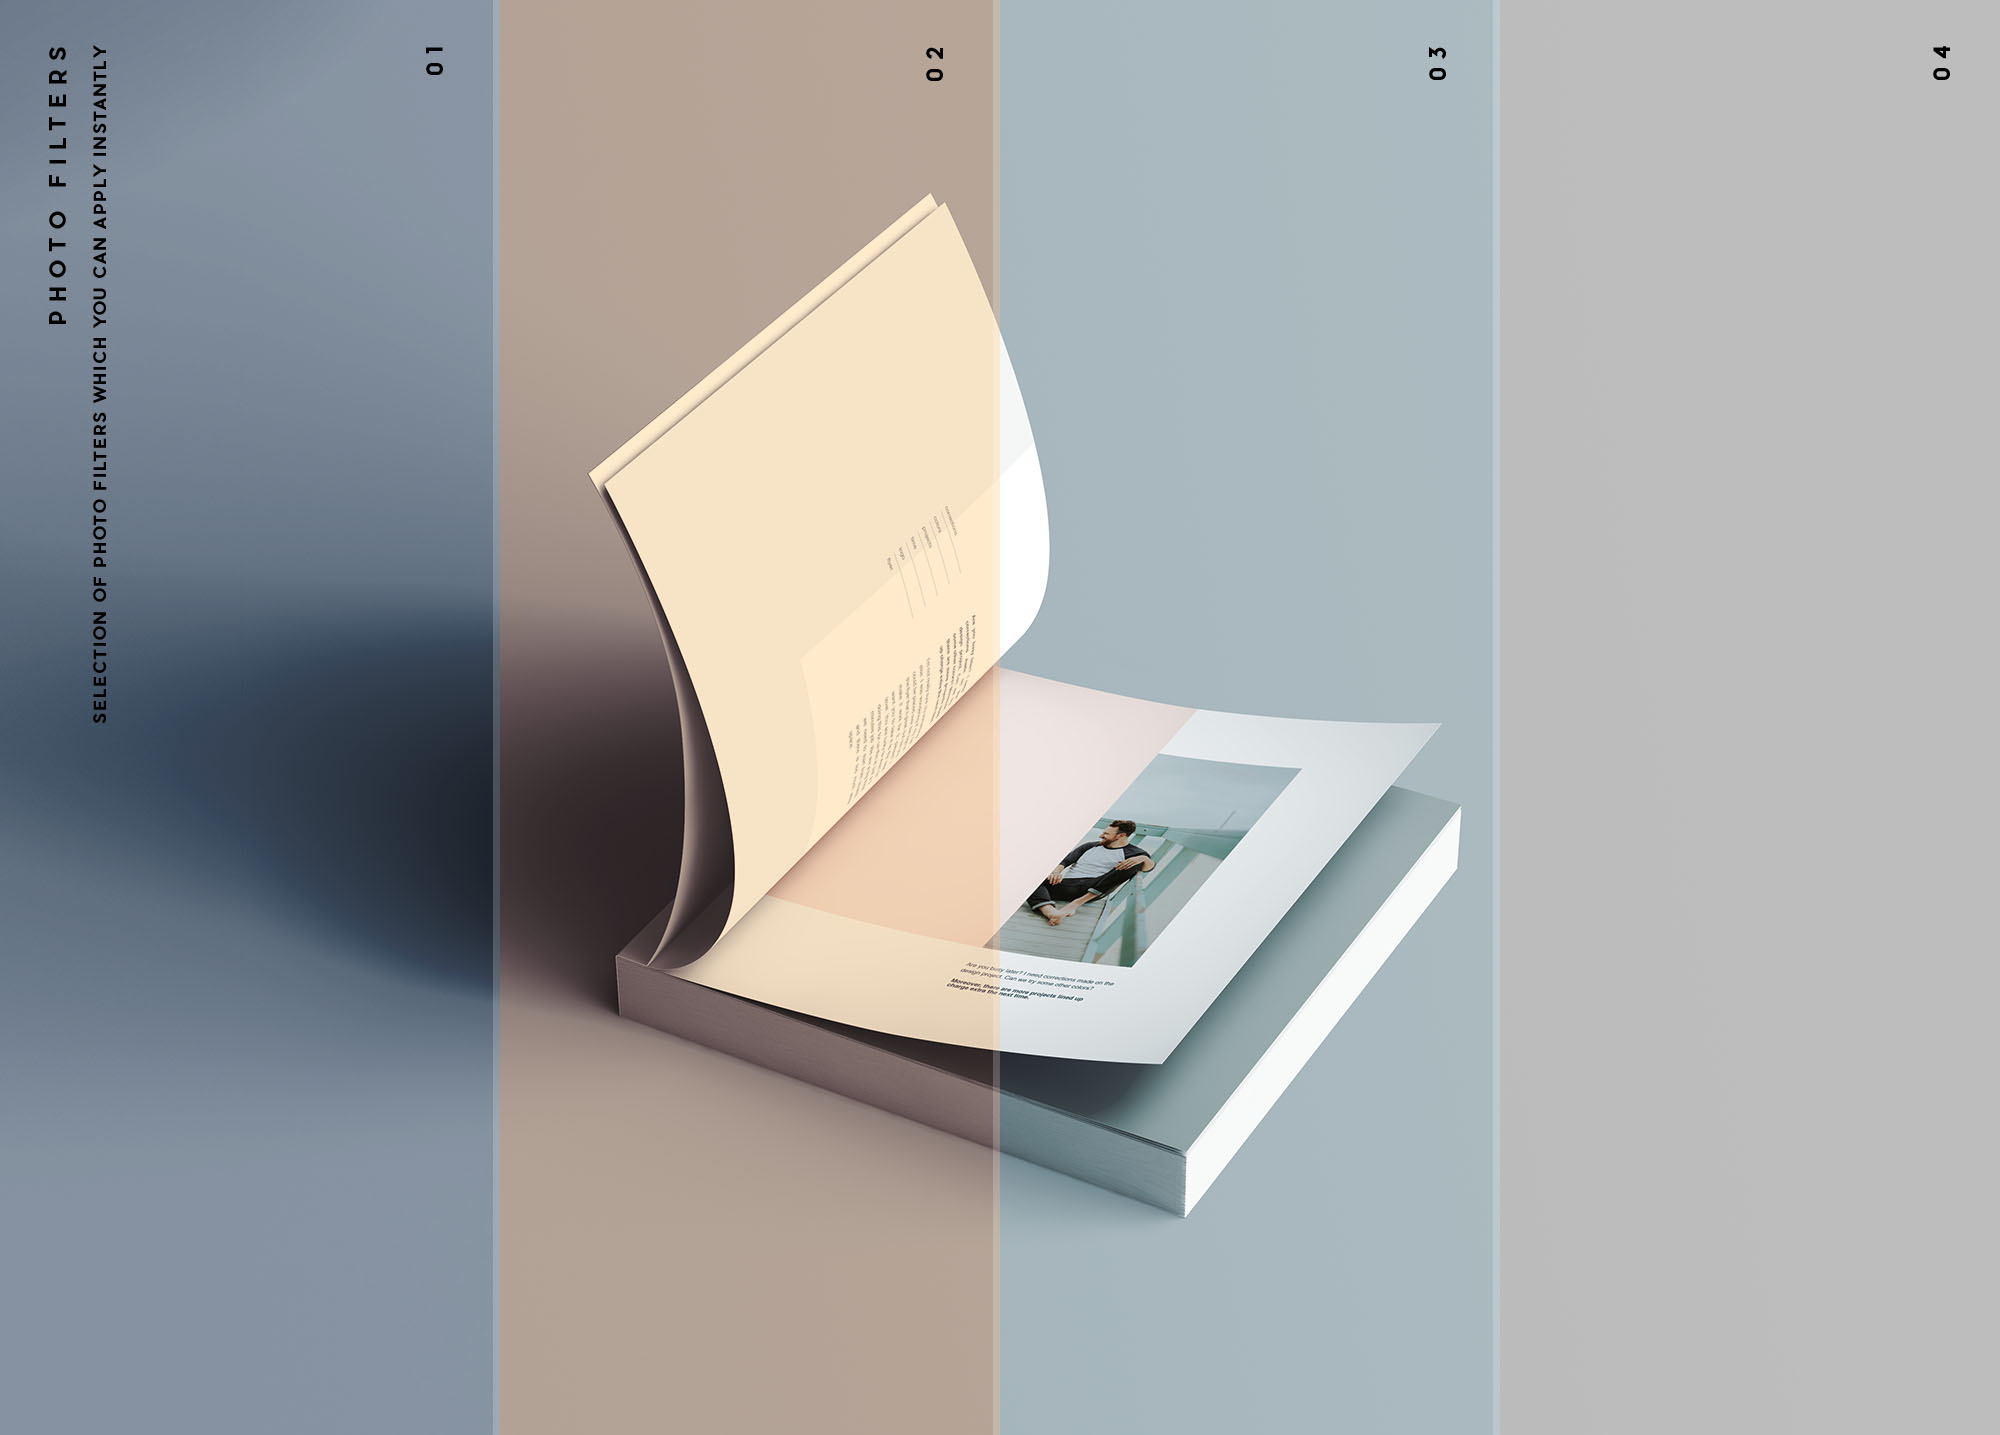 方形软封图书内页版式设计效果图样机素材库精选 Square Softcover Book Mockup插图(10)